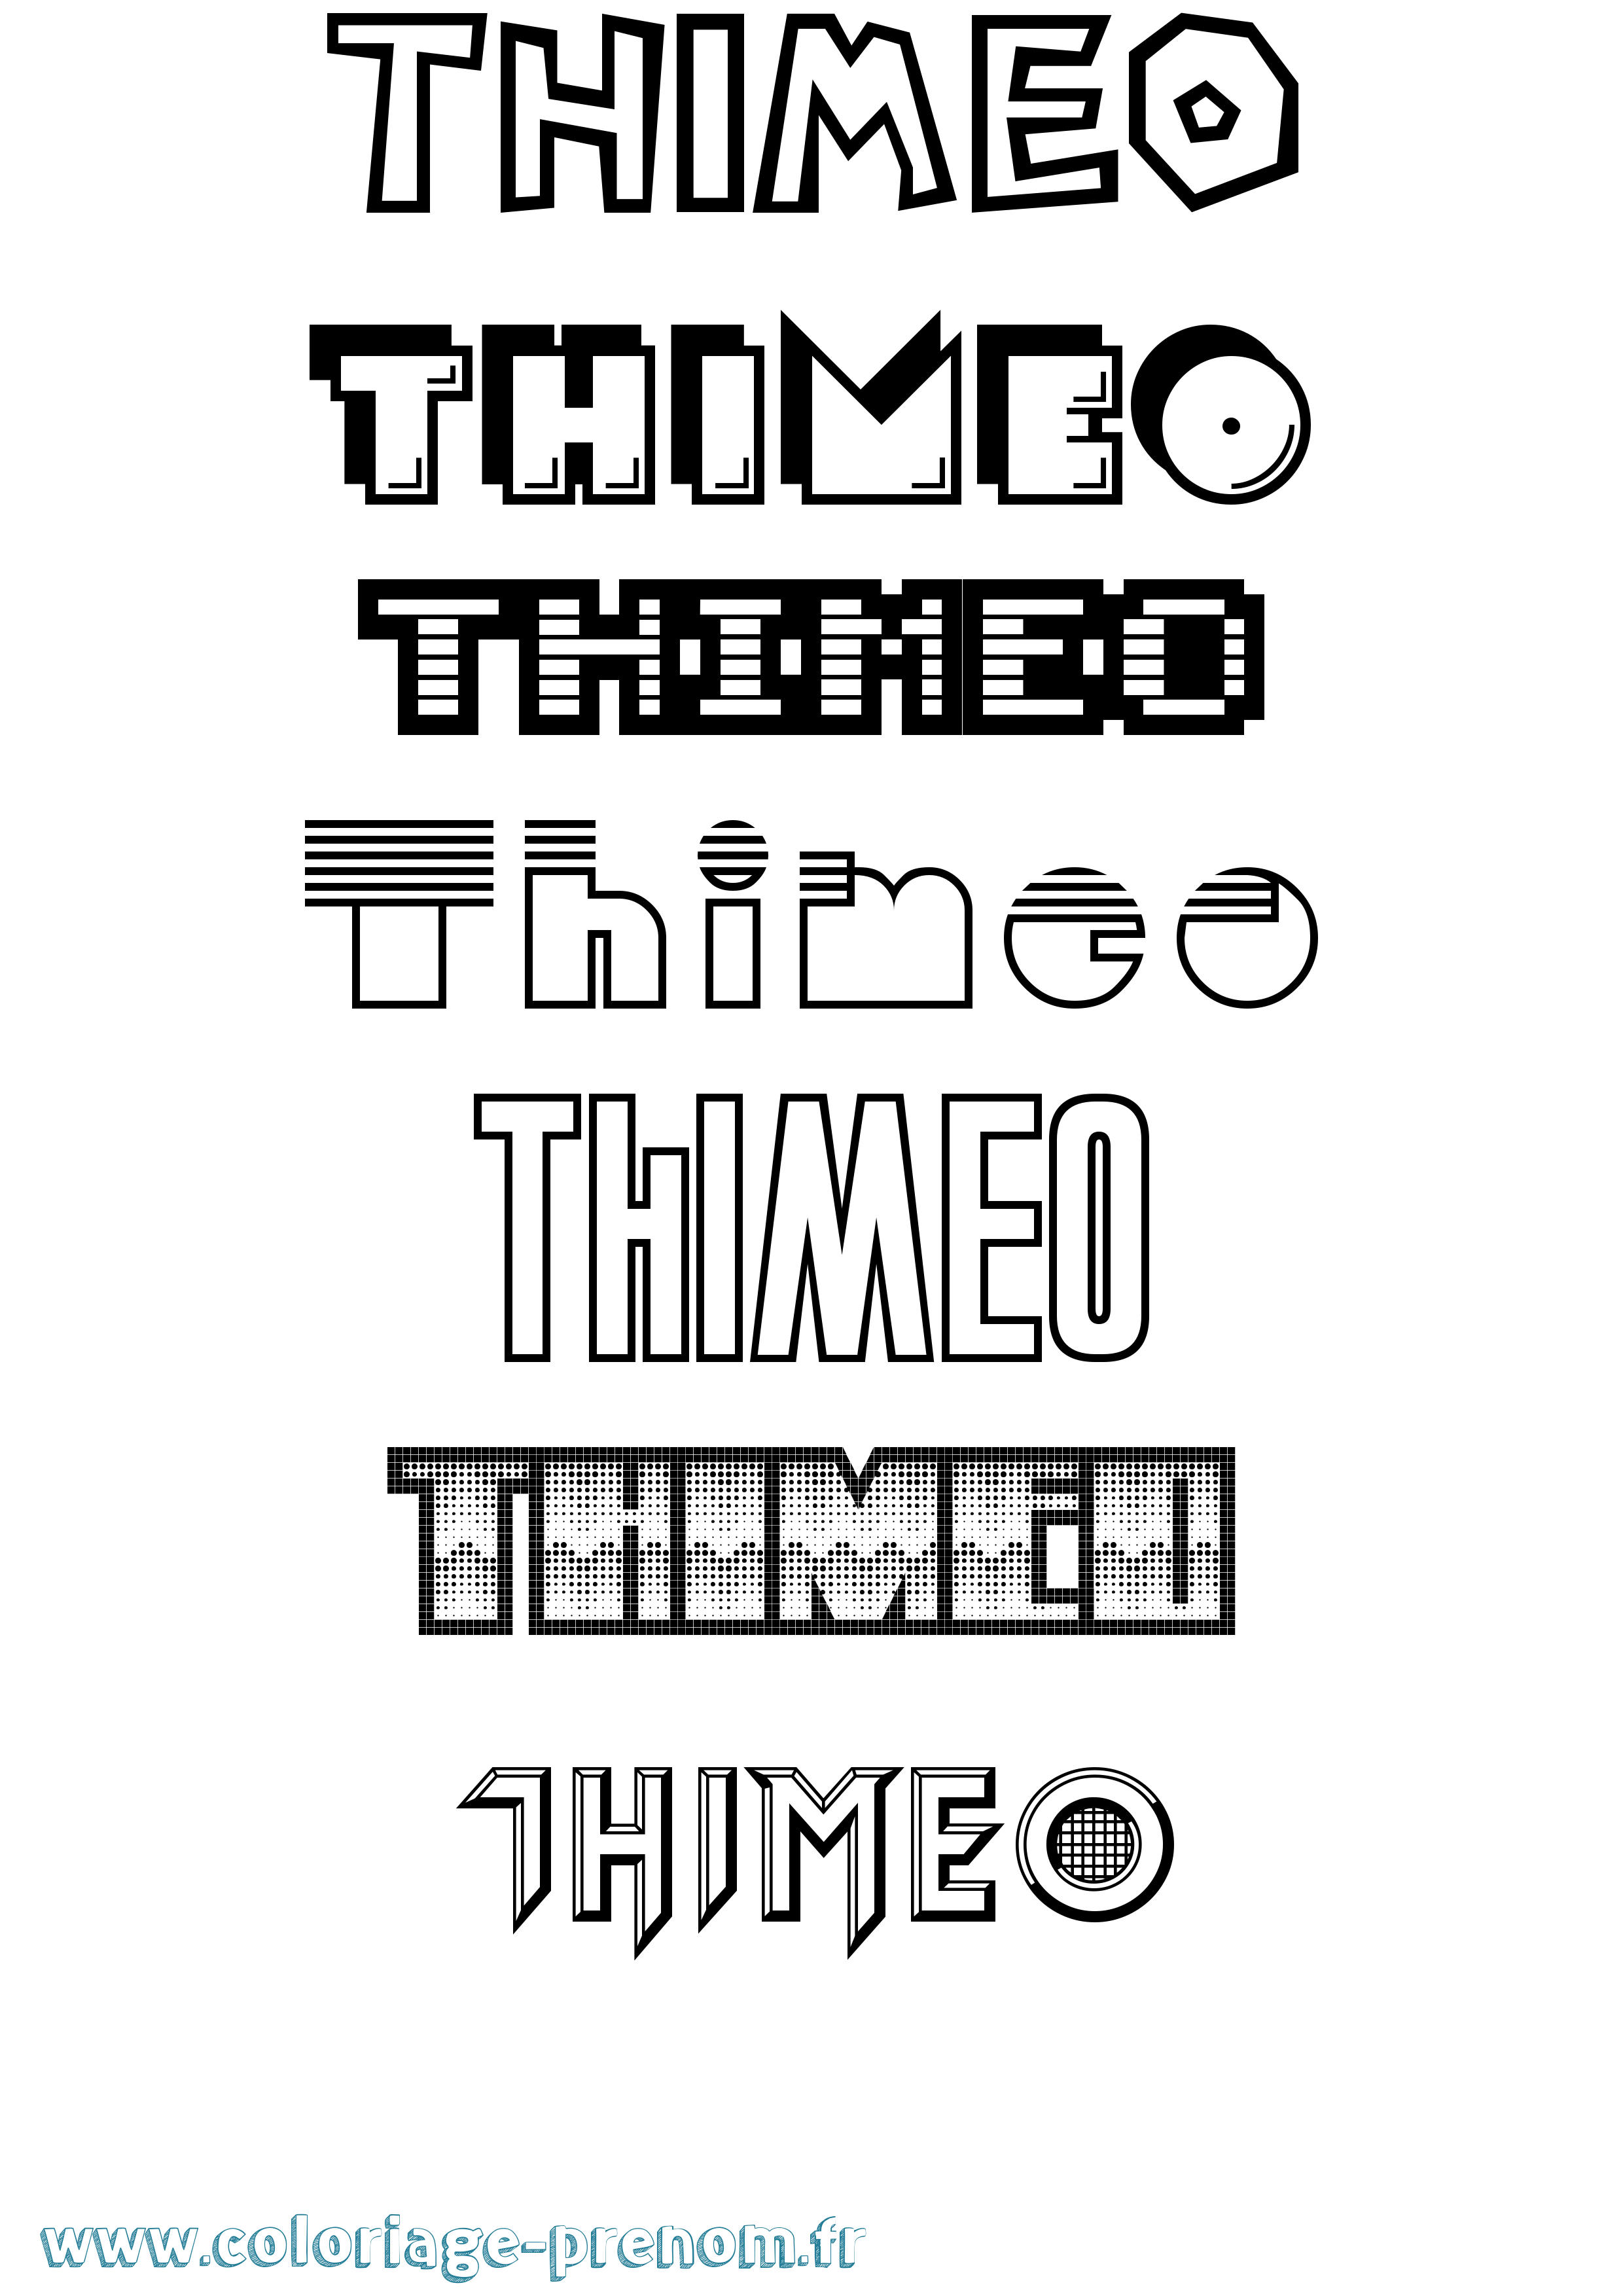 Coloriage prénom Thimeo Jeux Vidéos